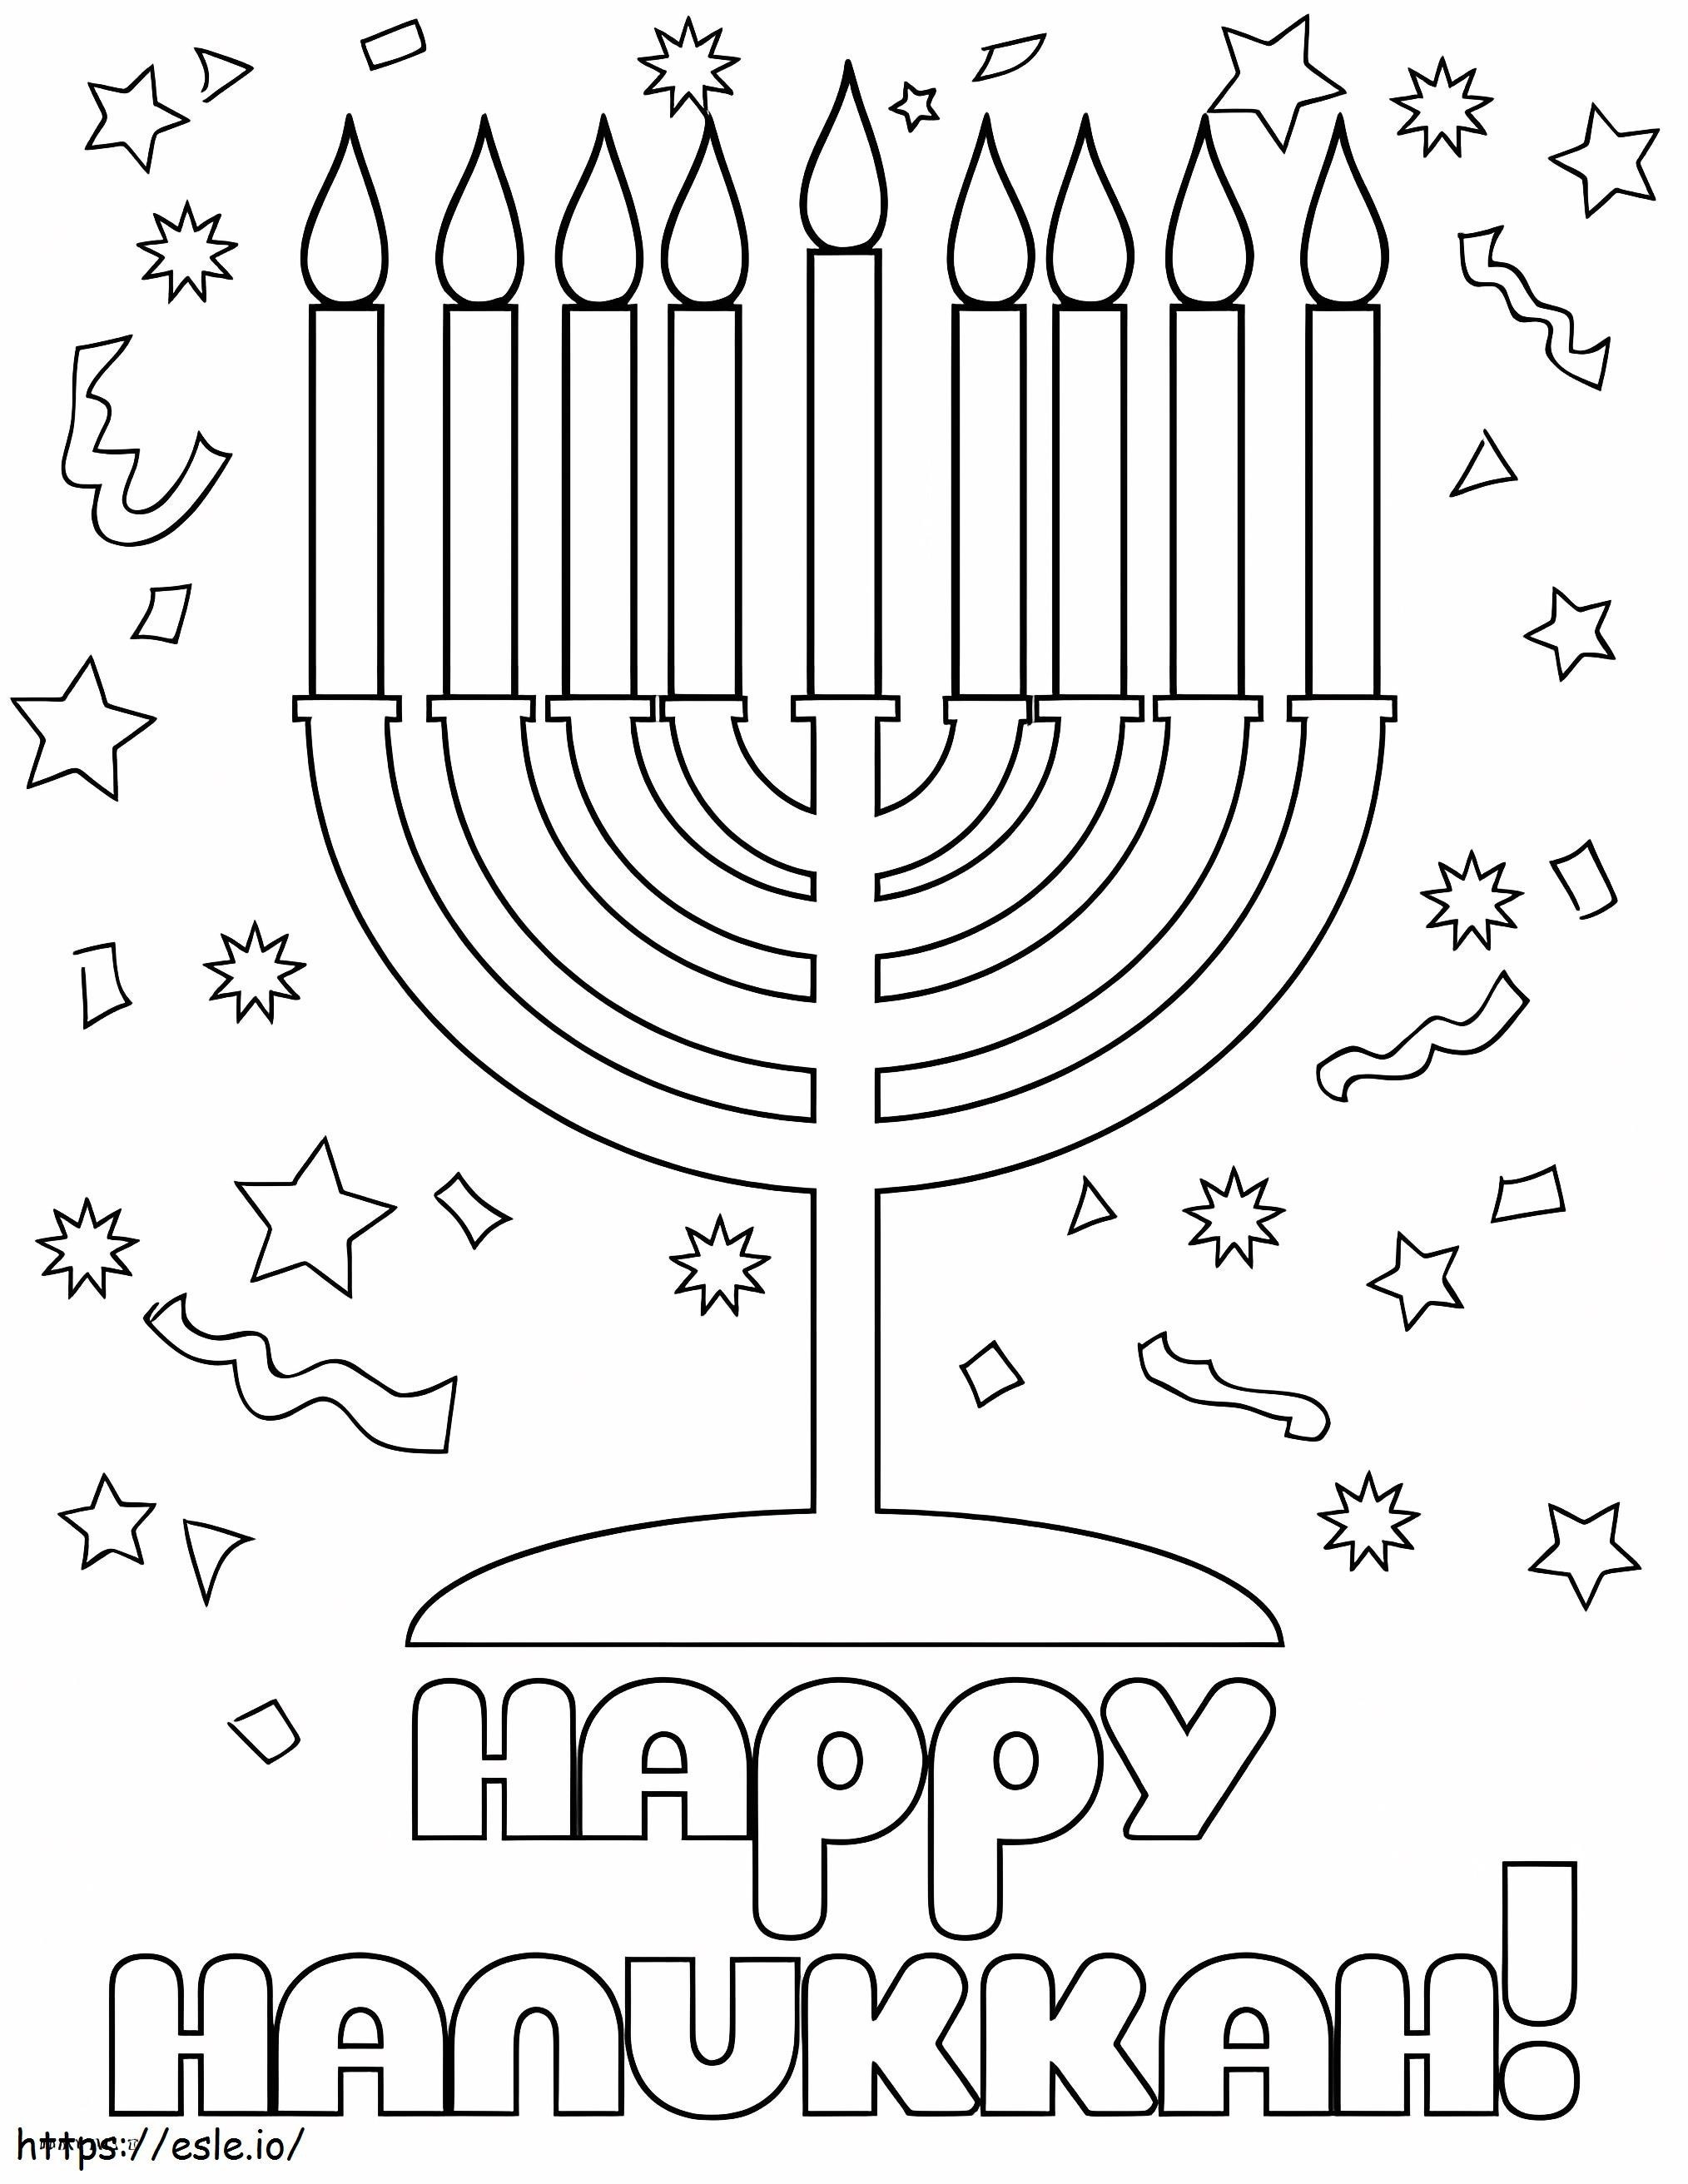 Felice Hanukkah da colorare da colorare